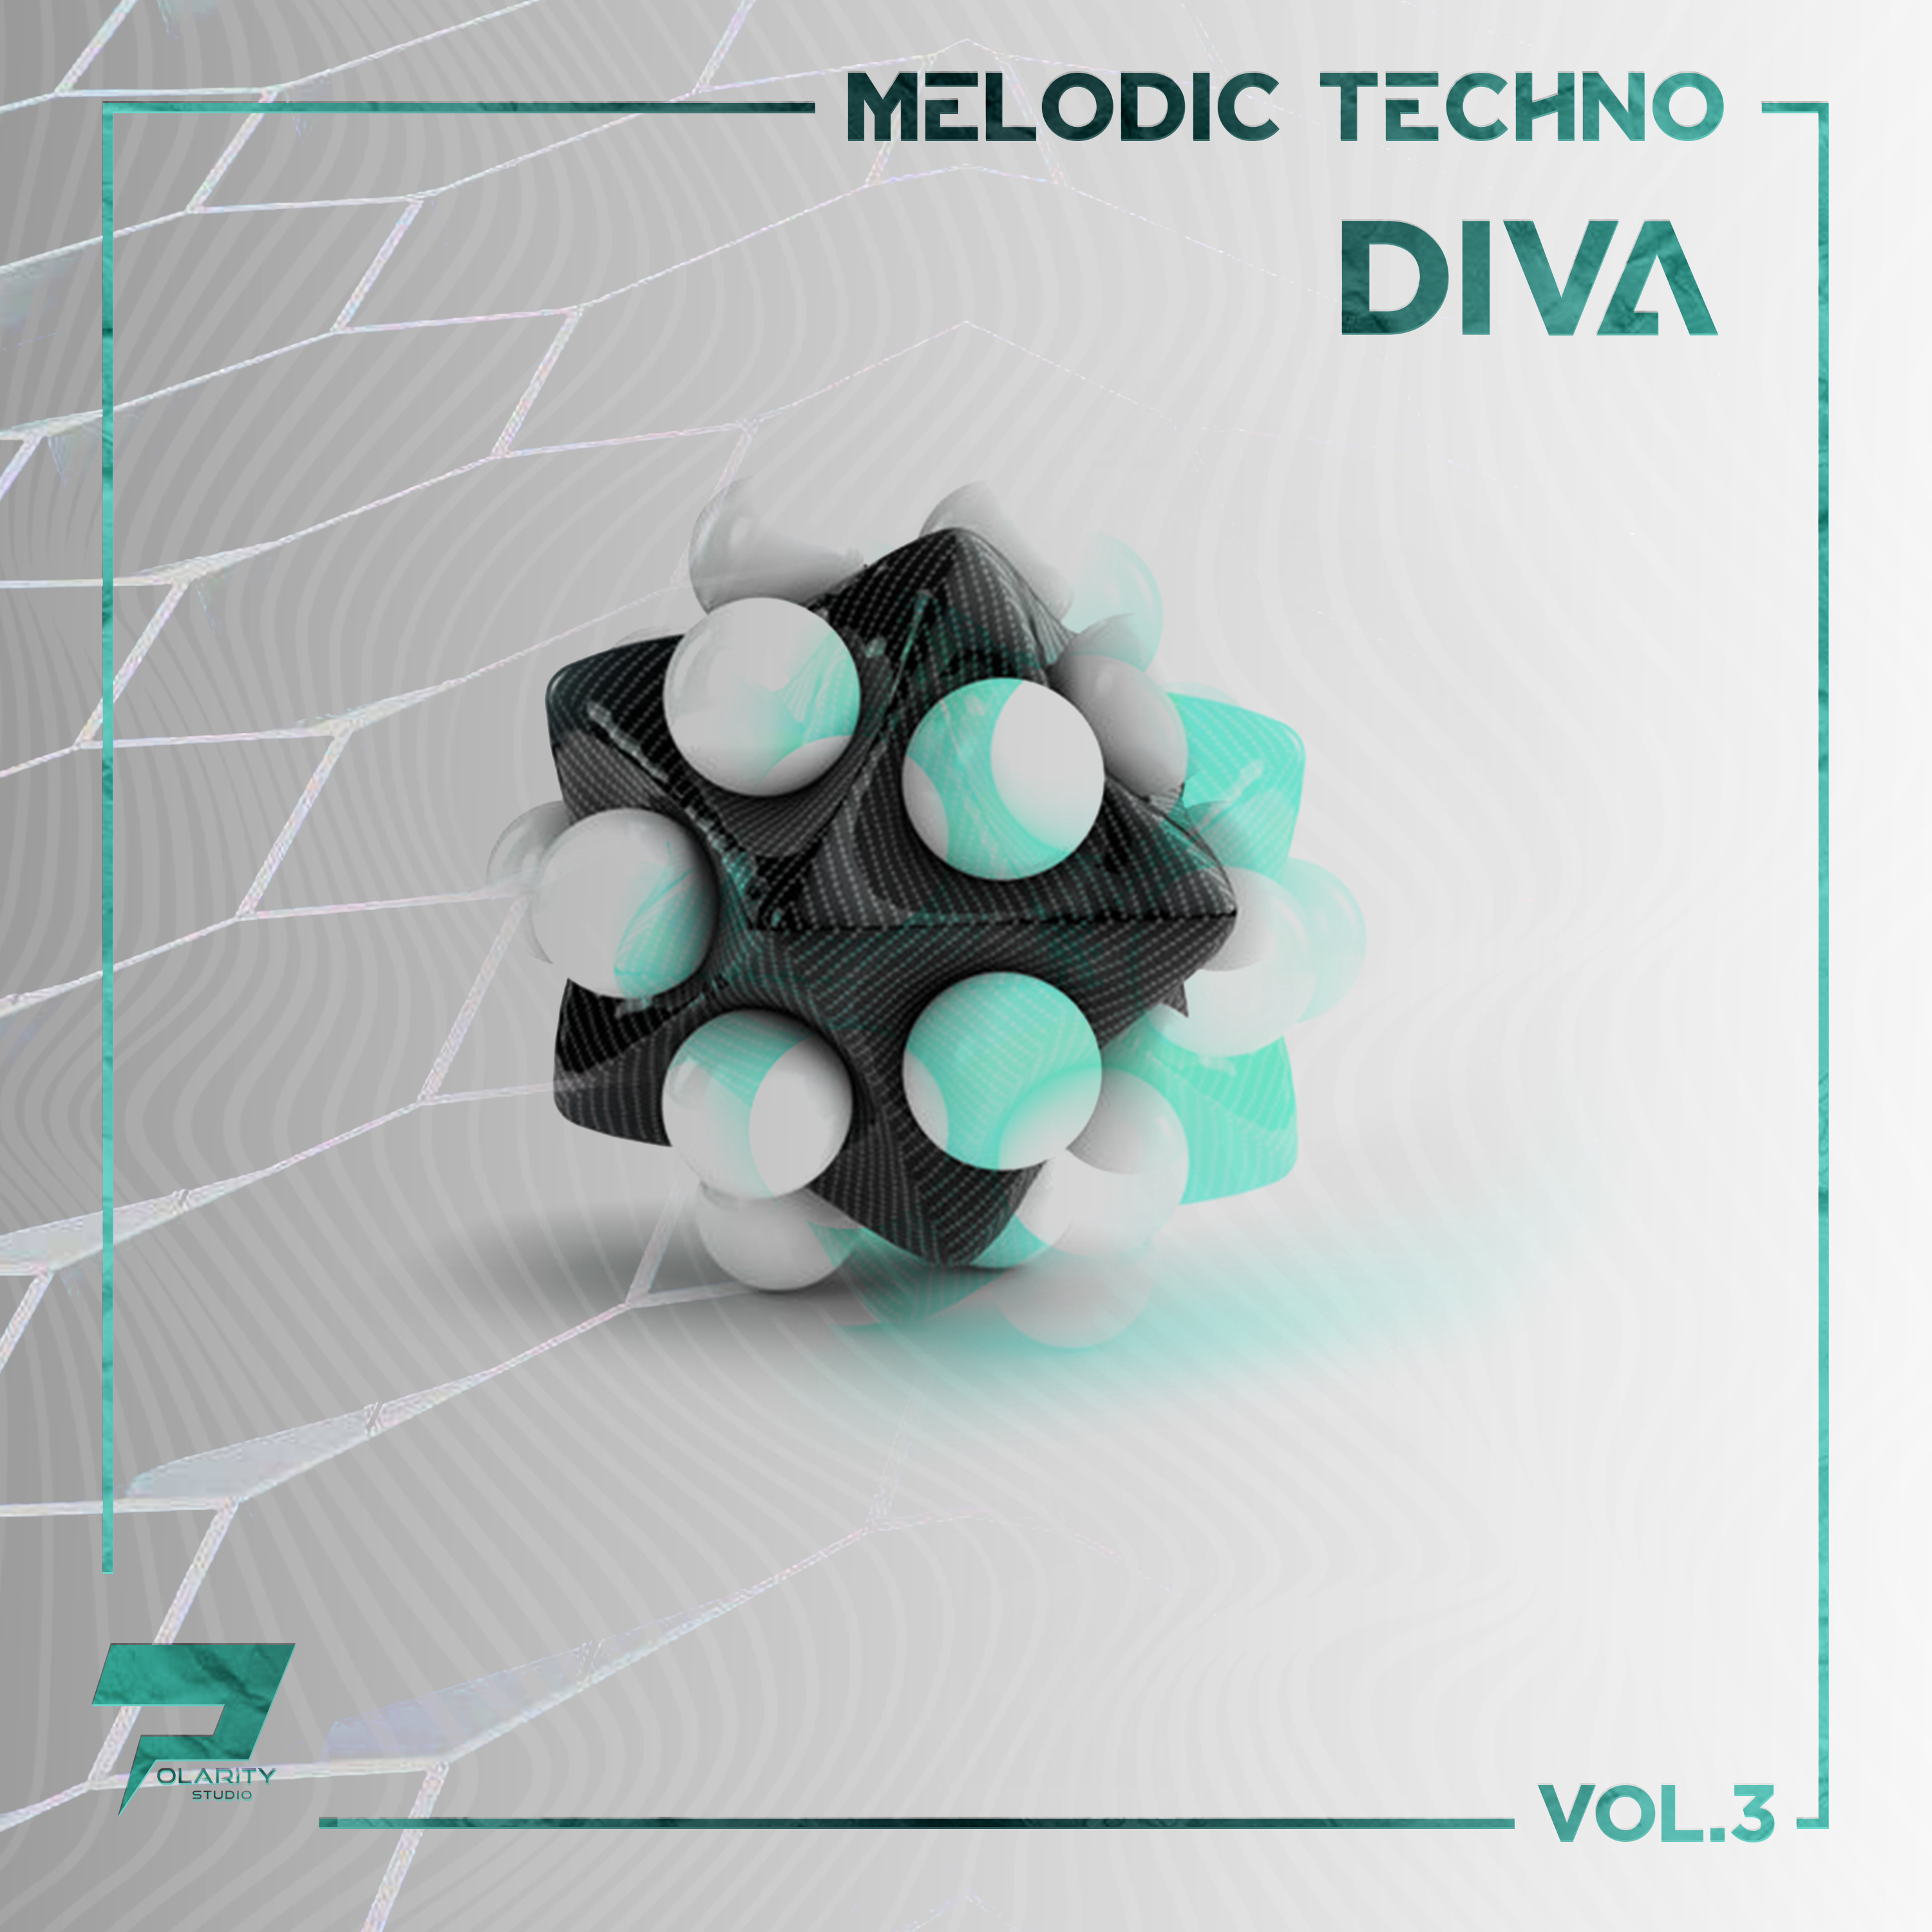 Polarity Studio - Melodic Techo - Diva Vol. 3